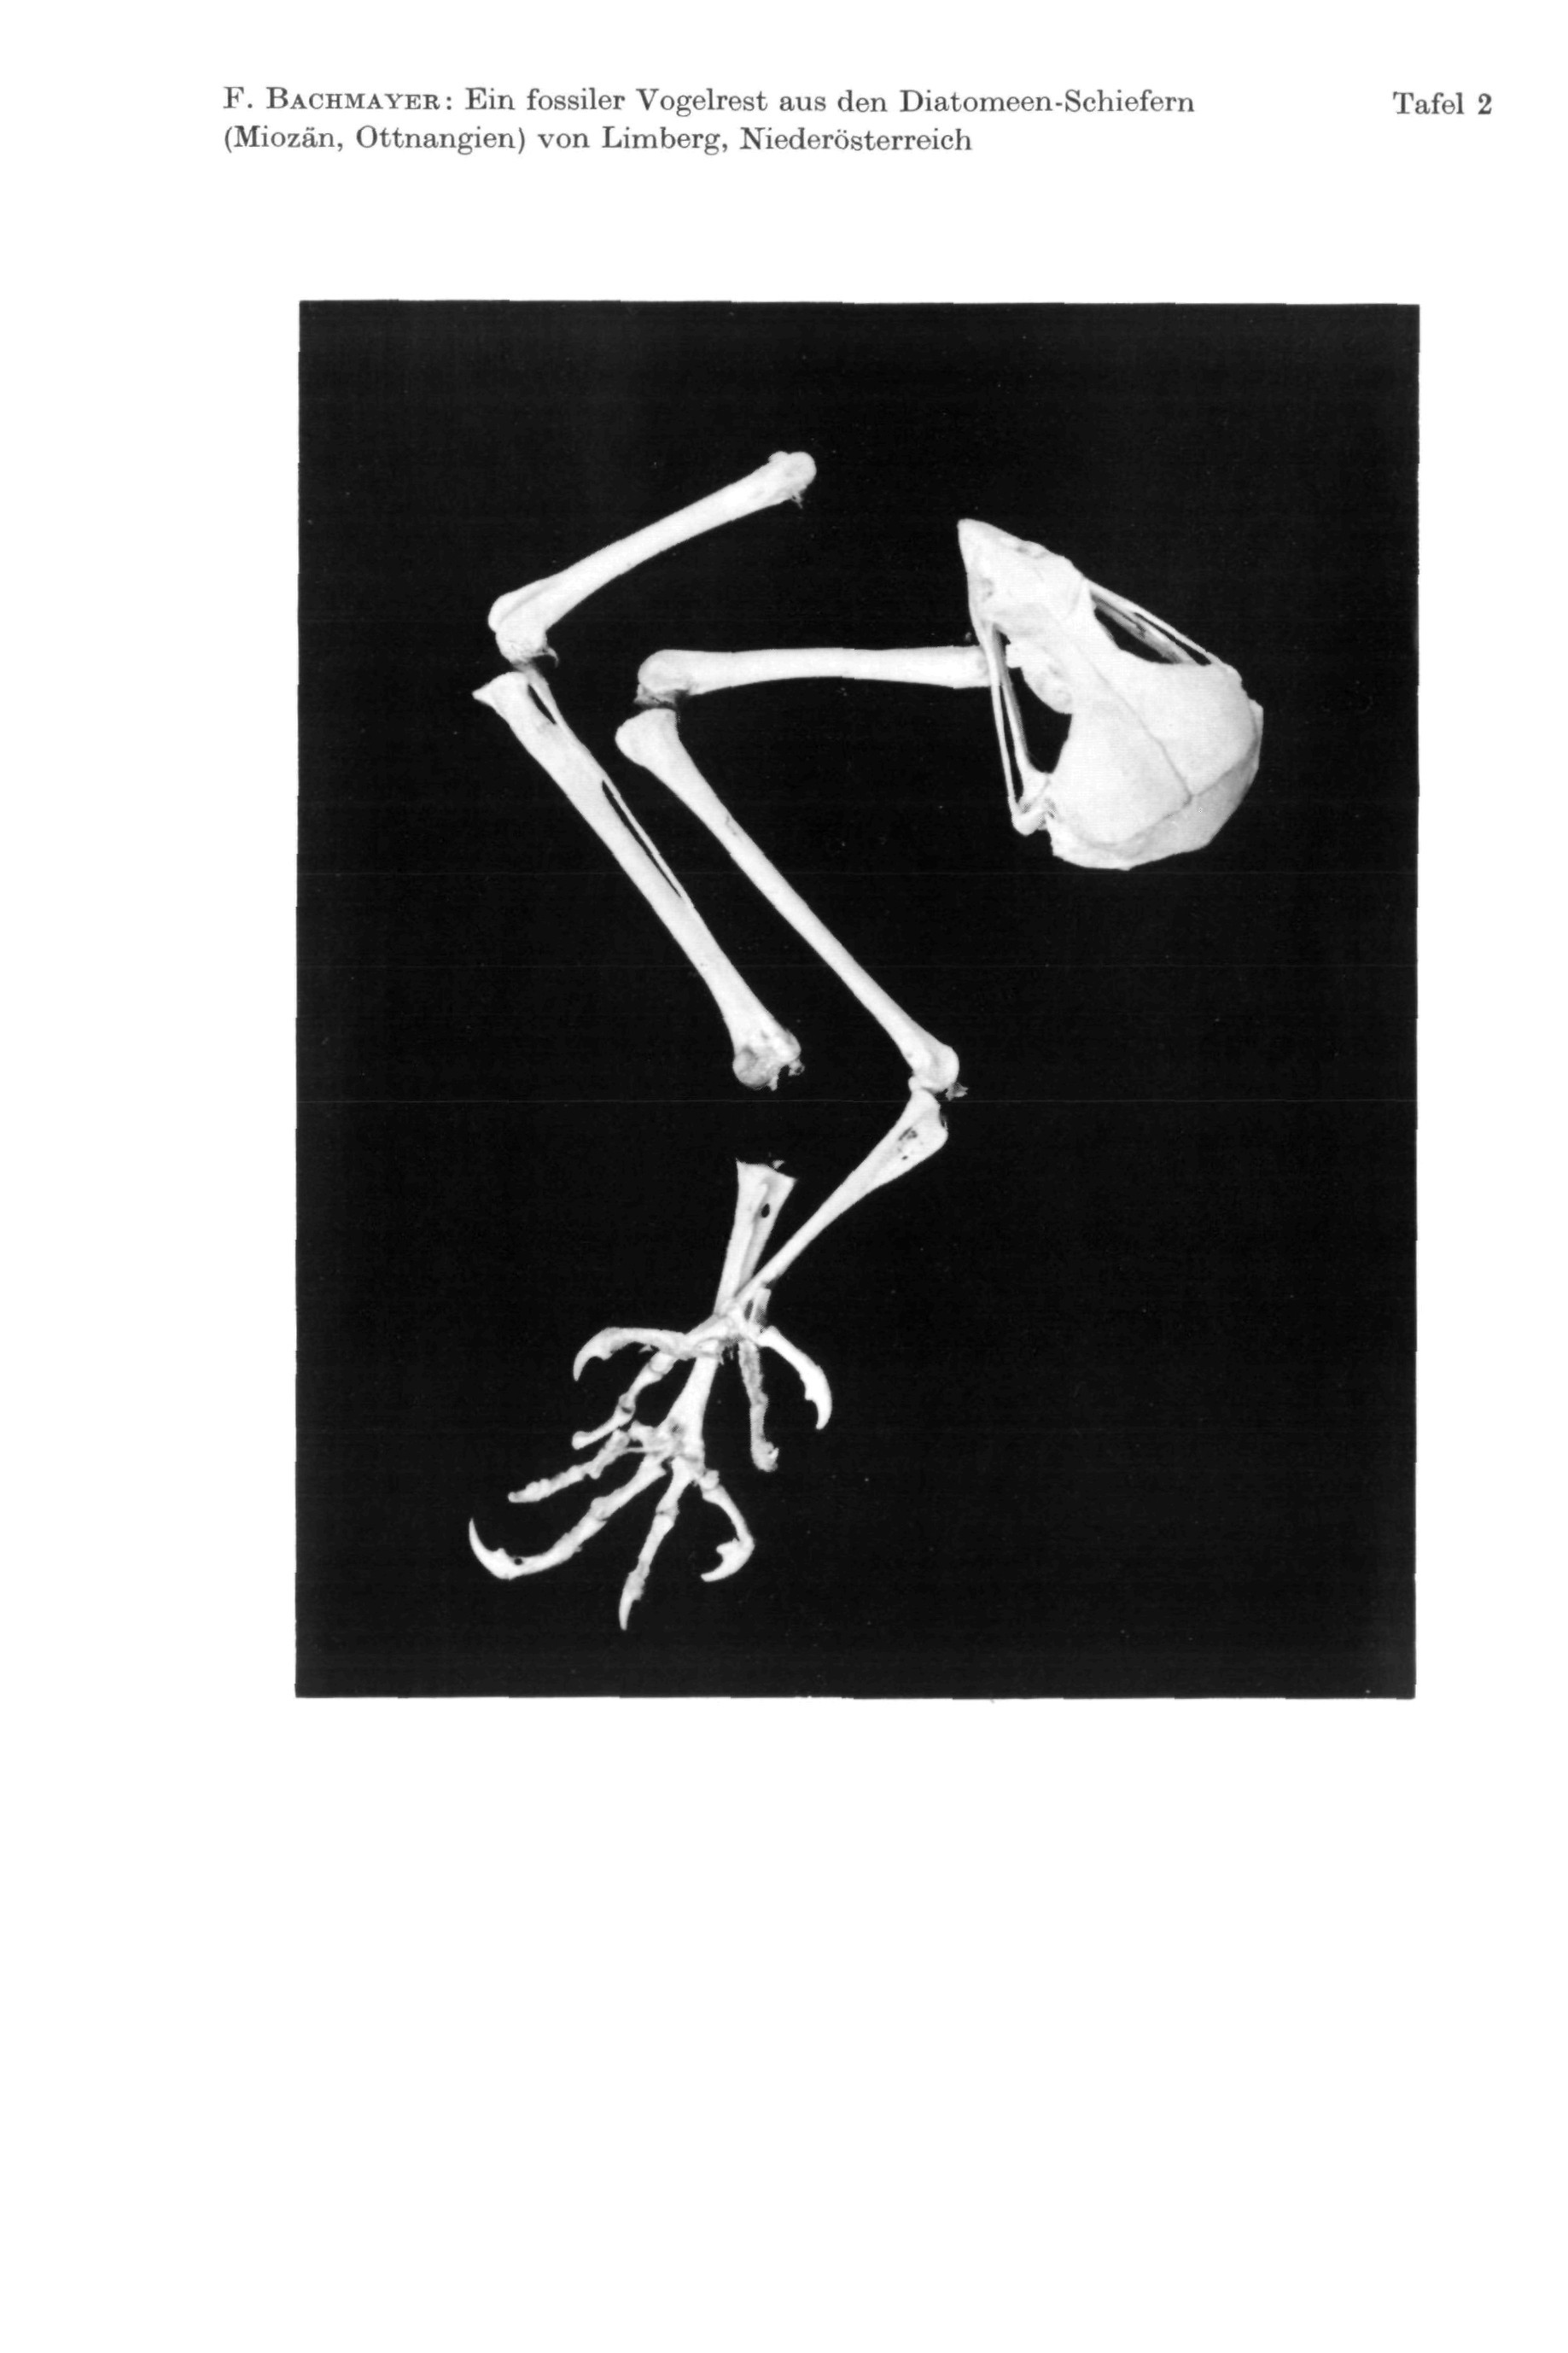 F. BACHMAYER : Ein fossiler Vogelrest aus den